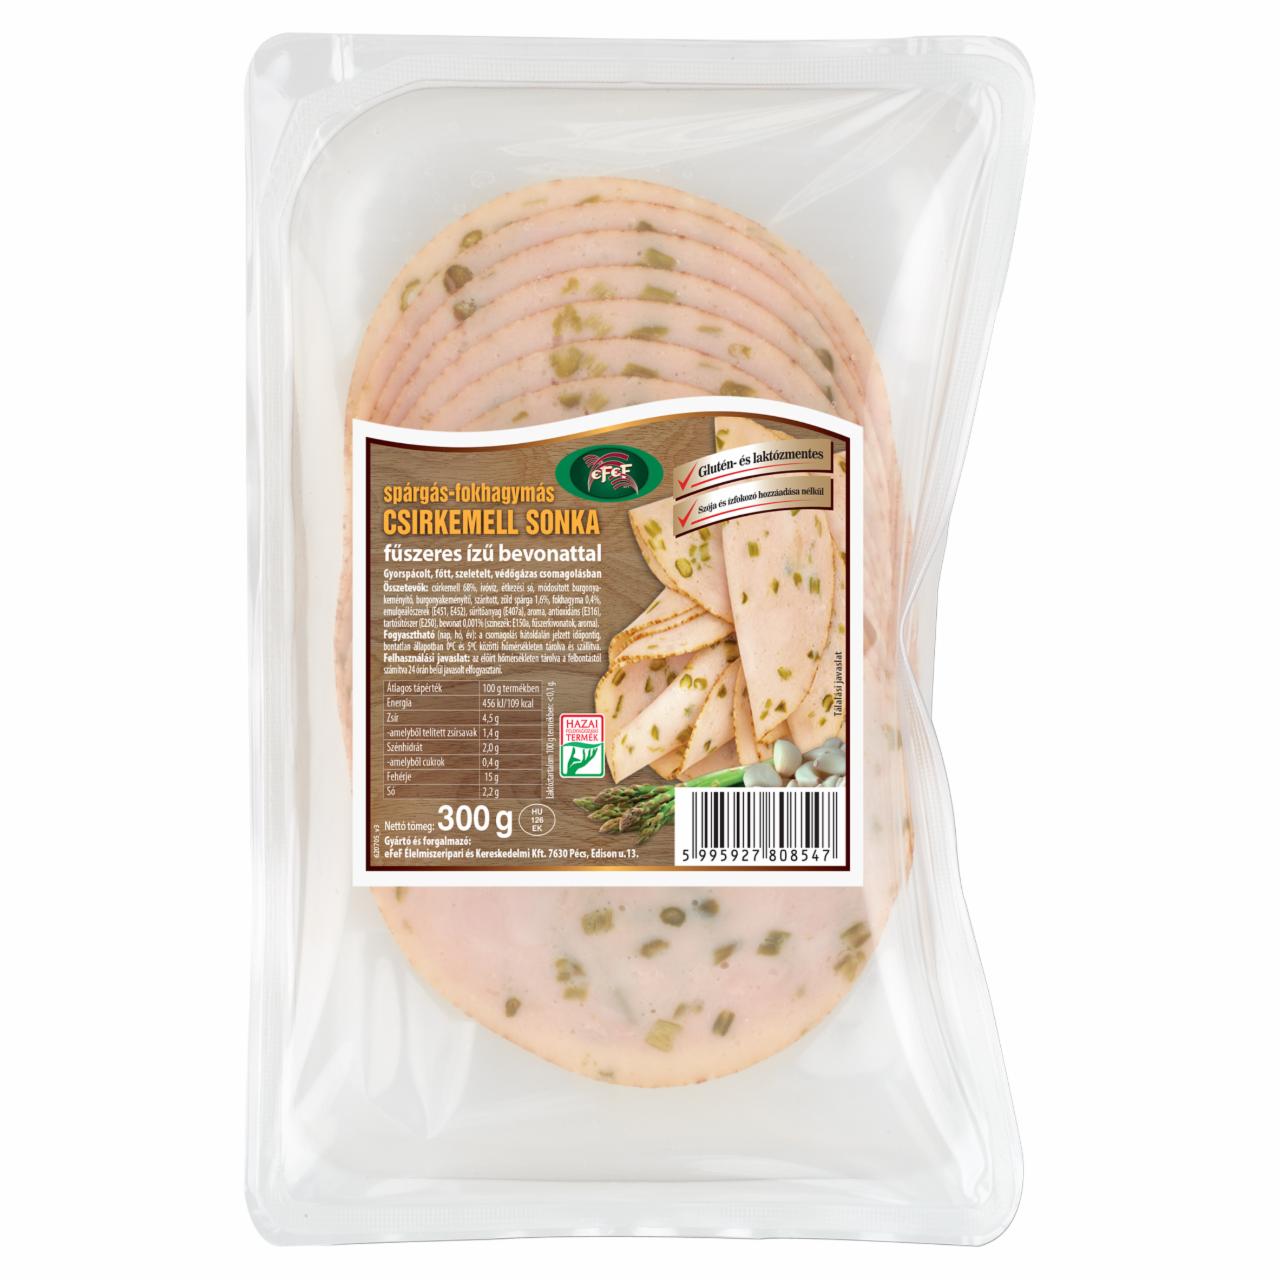 Képek - eFeF spárgás-fokhagymás csirkemell sonka fűszeres ízű bevonattal 300 g